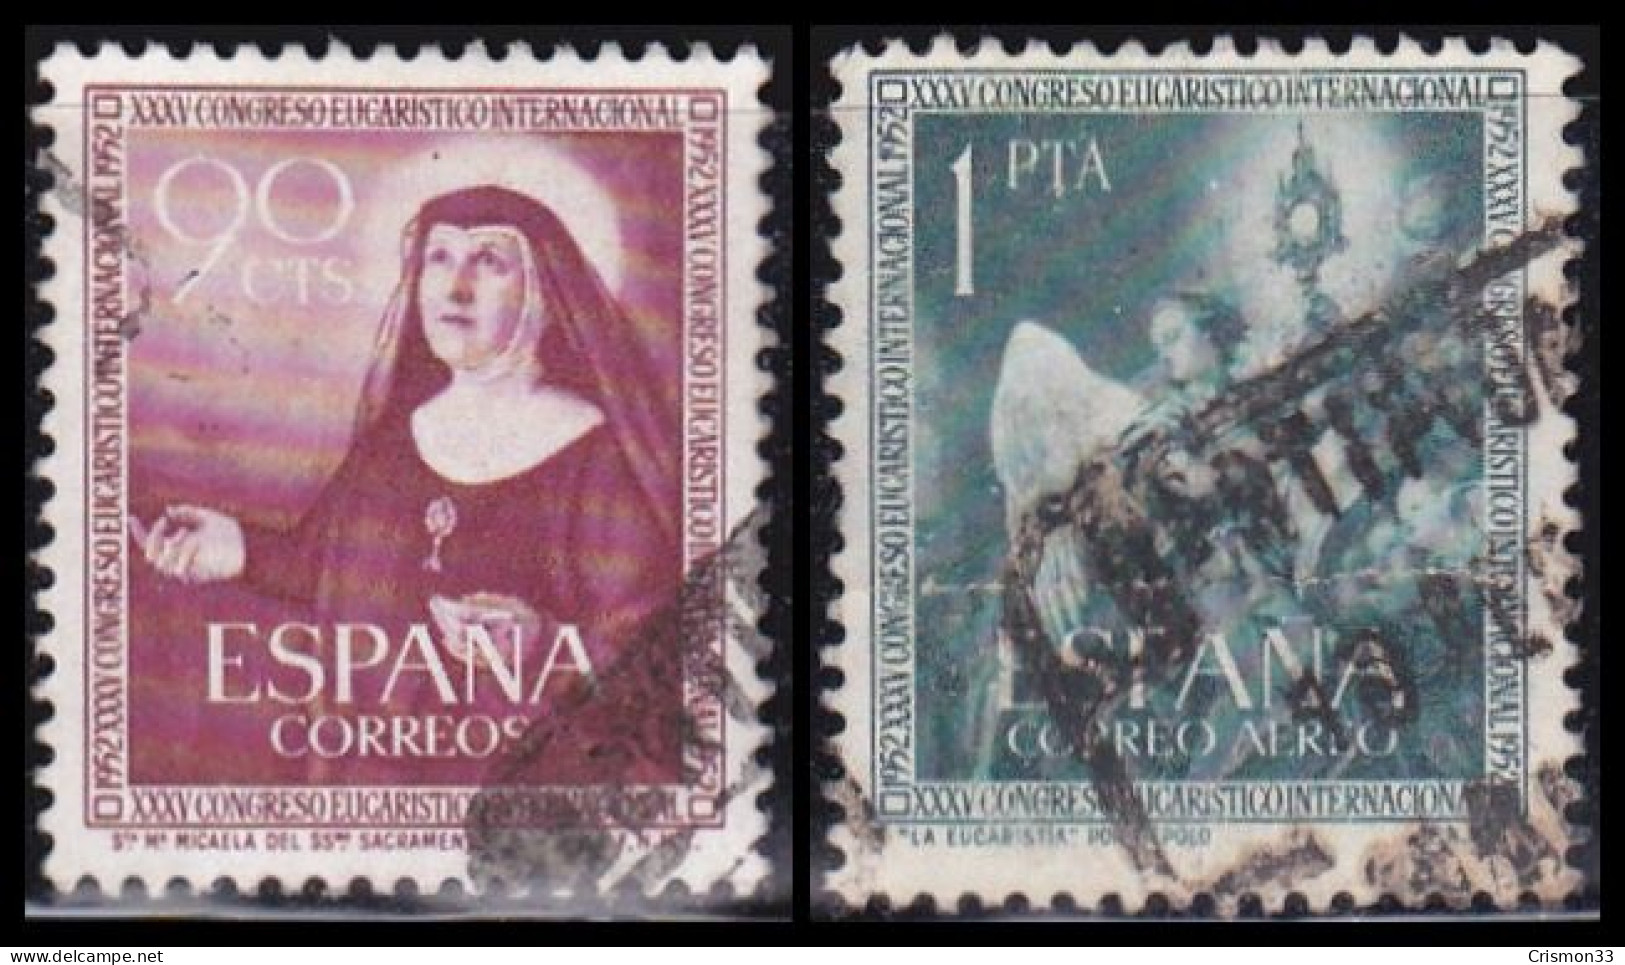 1952 - ESPAÑA - XXXV CONGRESO EUCARISTICO INTERNACIONAL EN BARCELONA - EDIFIL 1116,1117 - SERIE COMPLETA - Used Stamps